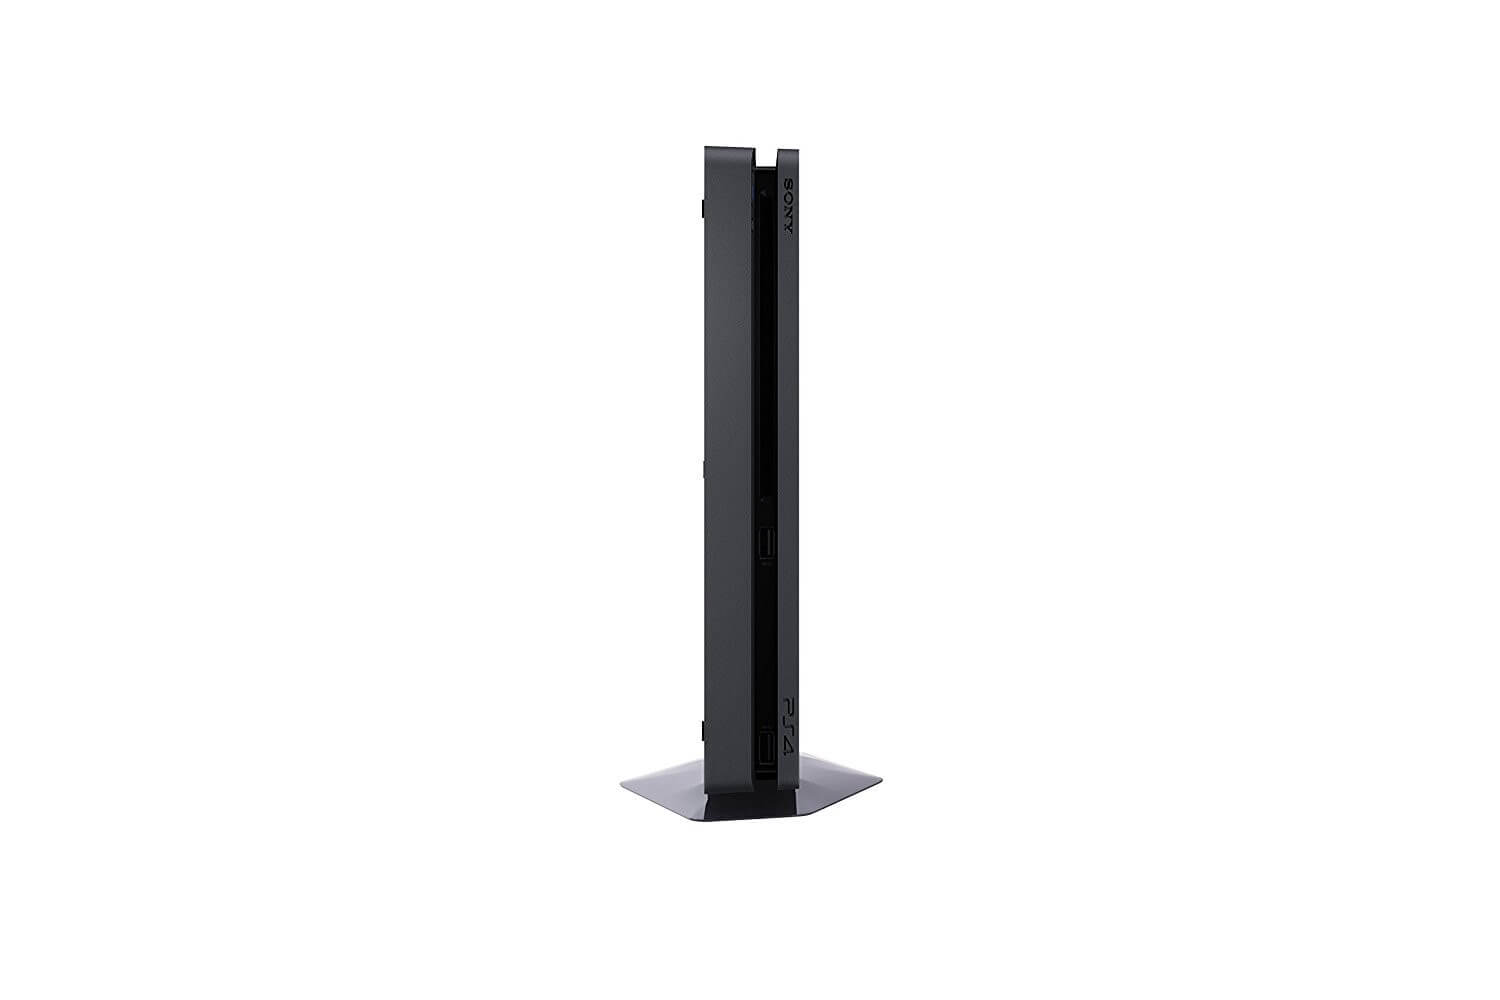 Sony PlayStation 4 Slim 500GB - Black